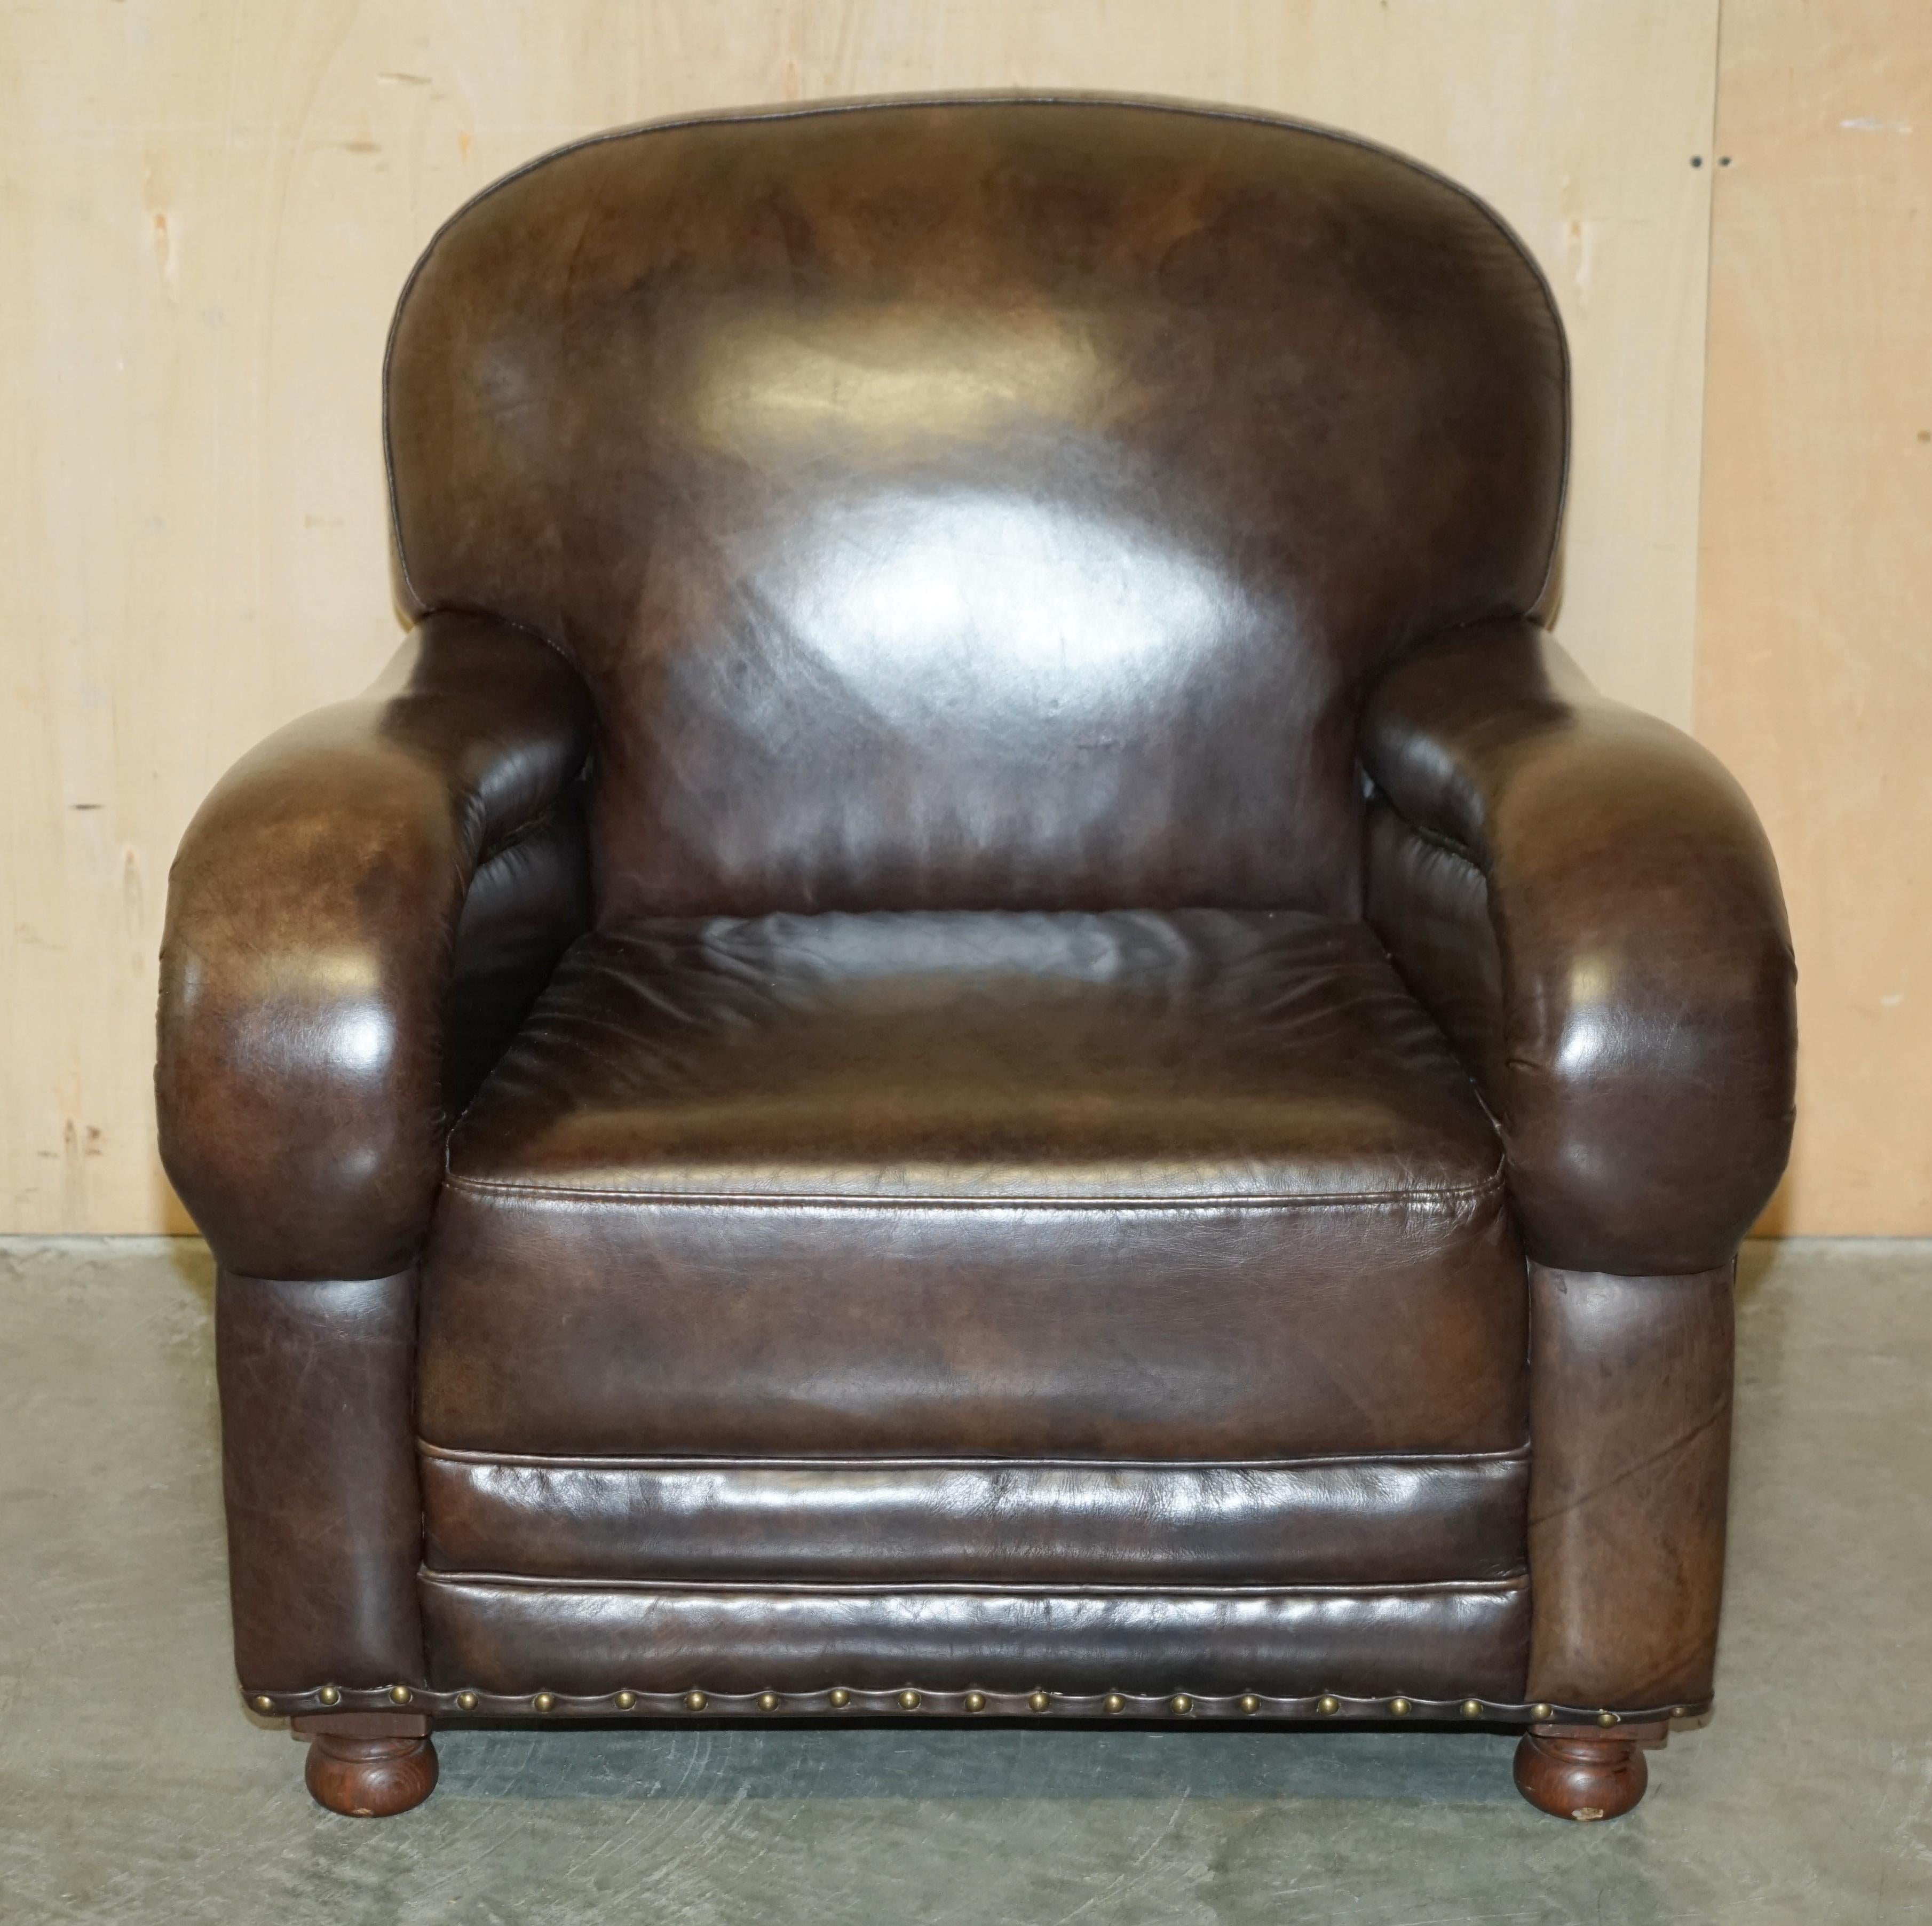 Royal House Antiques

The House Antiques a le plaisir de proposer à la vente ce charmant fauteuil club en cuir marron teint à la main, qui n'est plus utilisé depuis de nombreuses années.

Veuillez noter que les frais de livraison indiqués sont